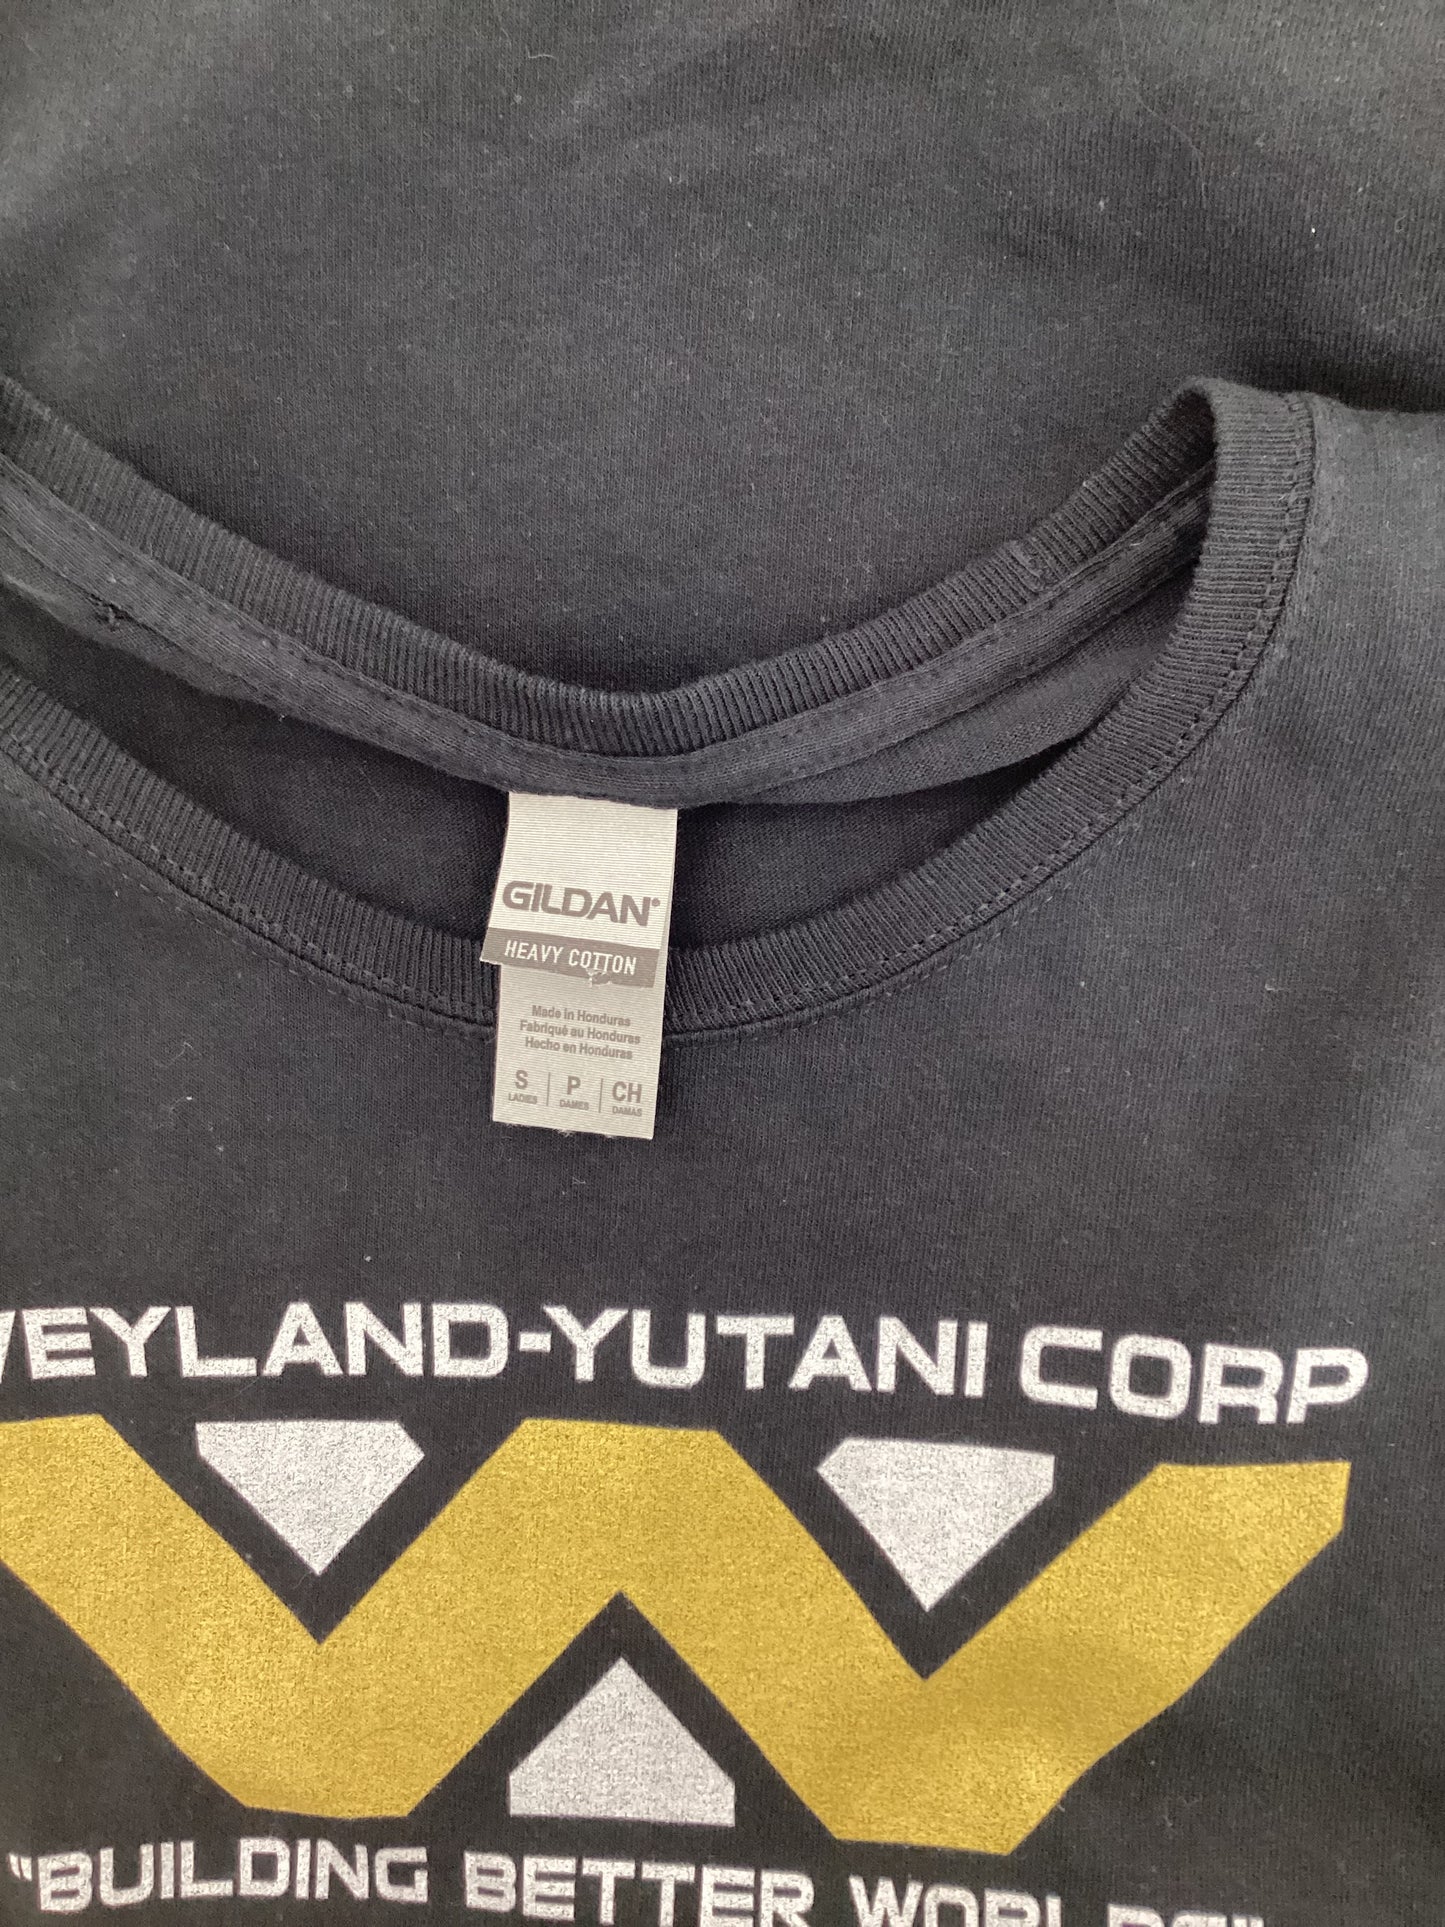 Weyland-Yutani Corp T-Shirt Ladies Size Small.